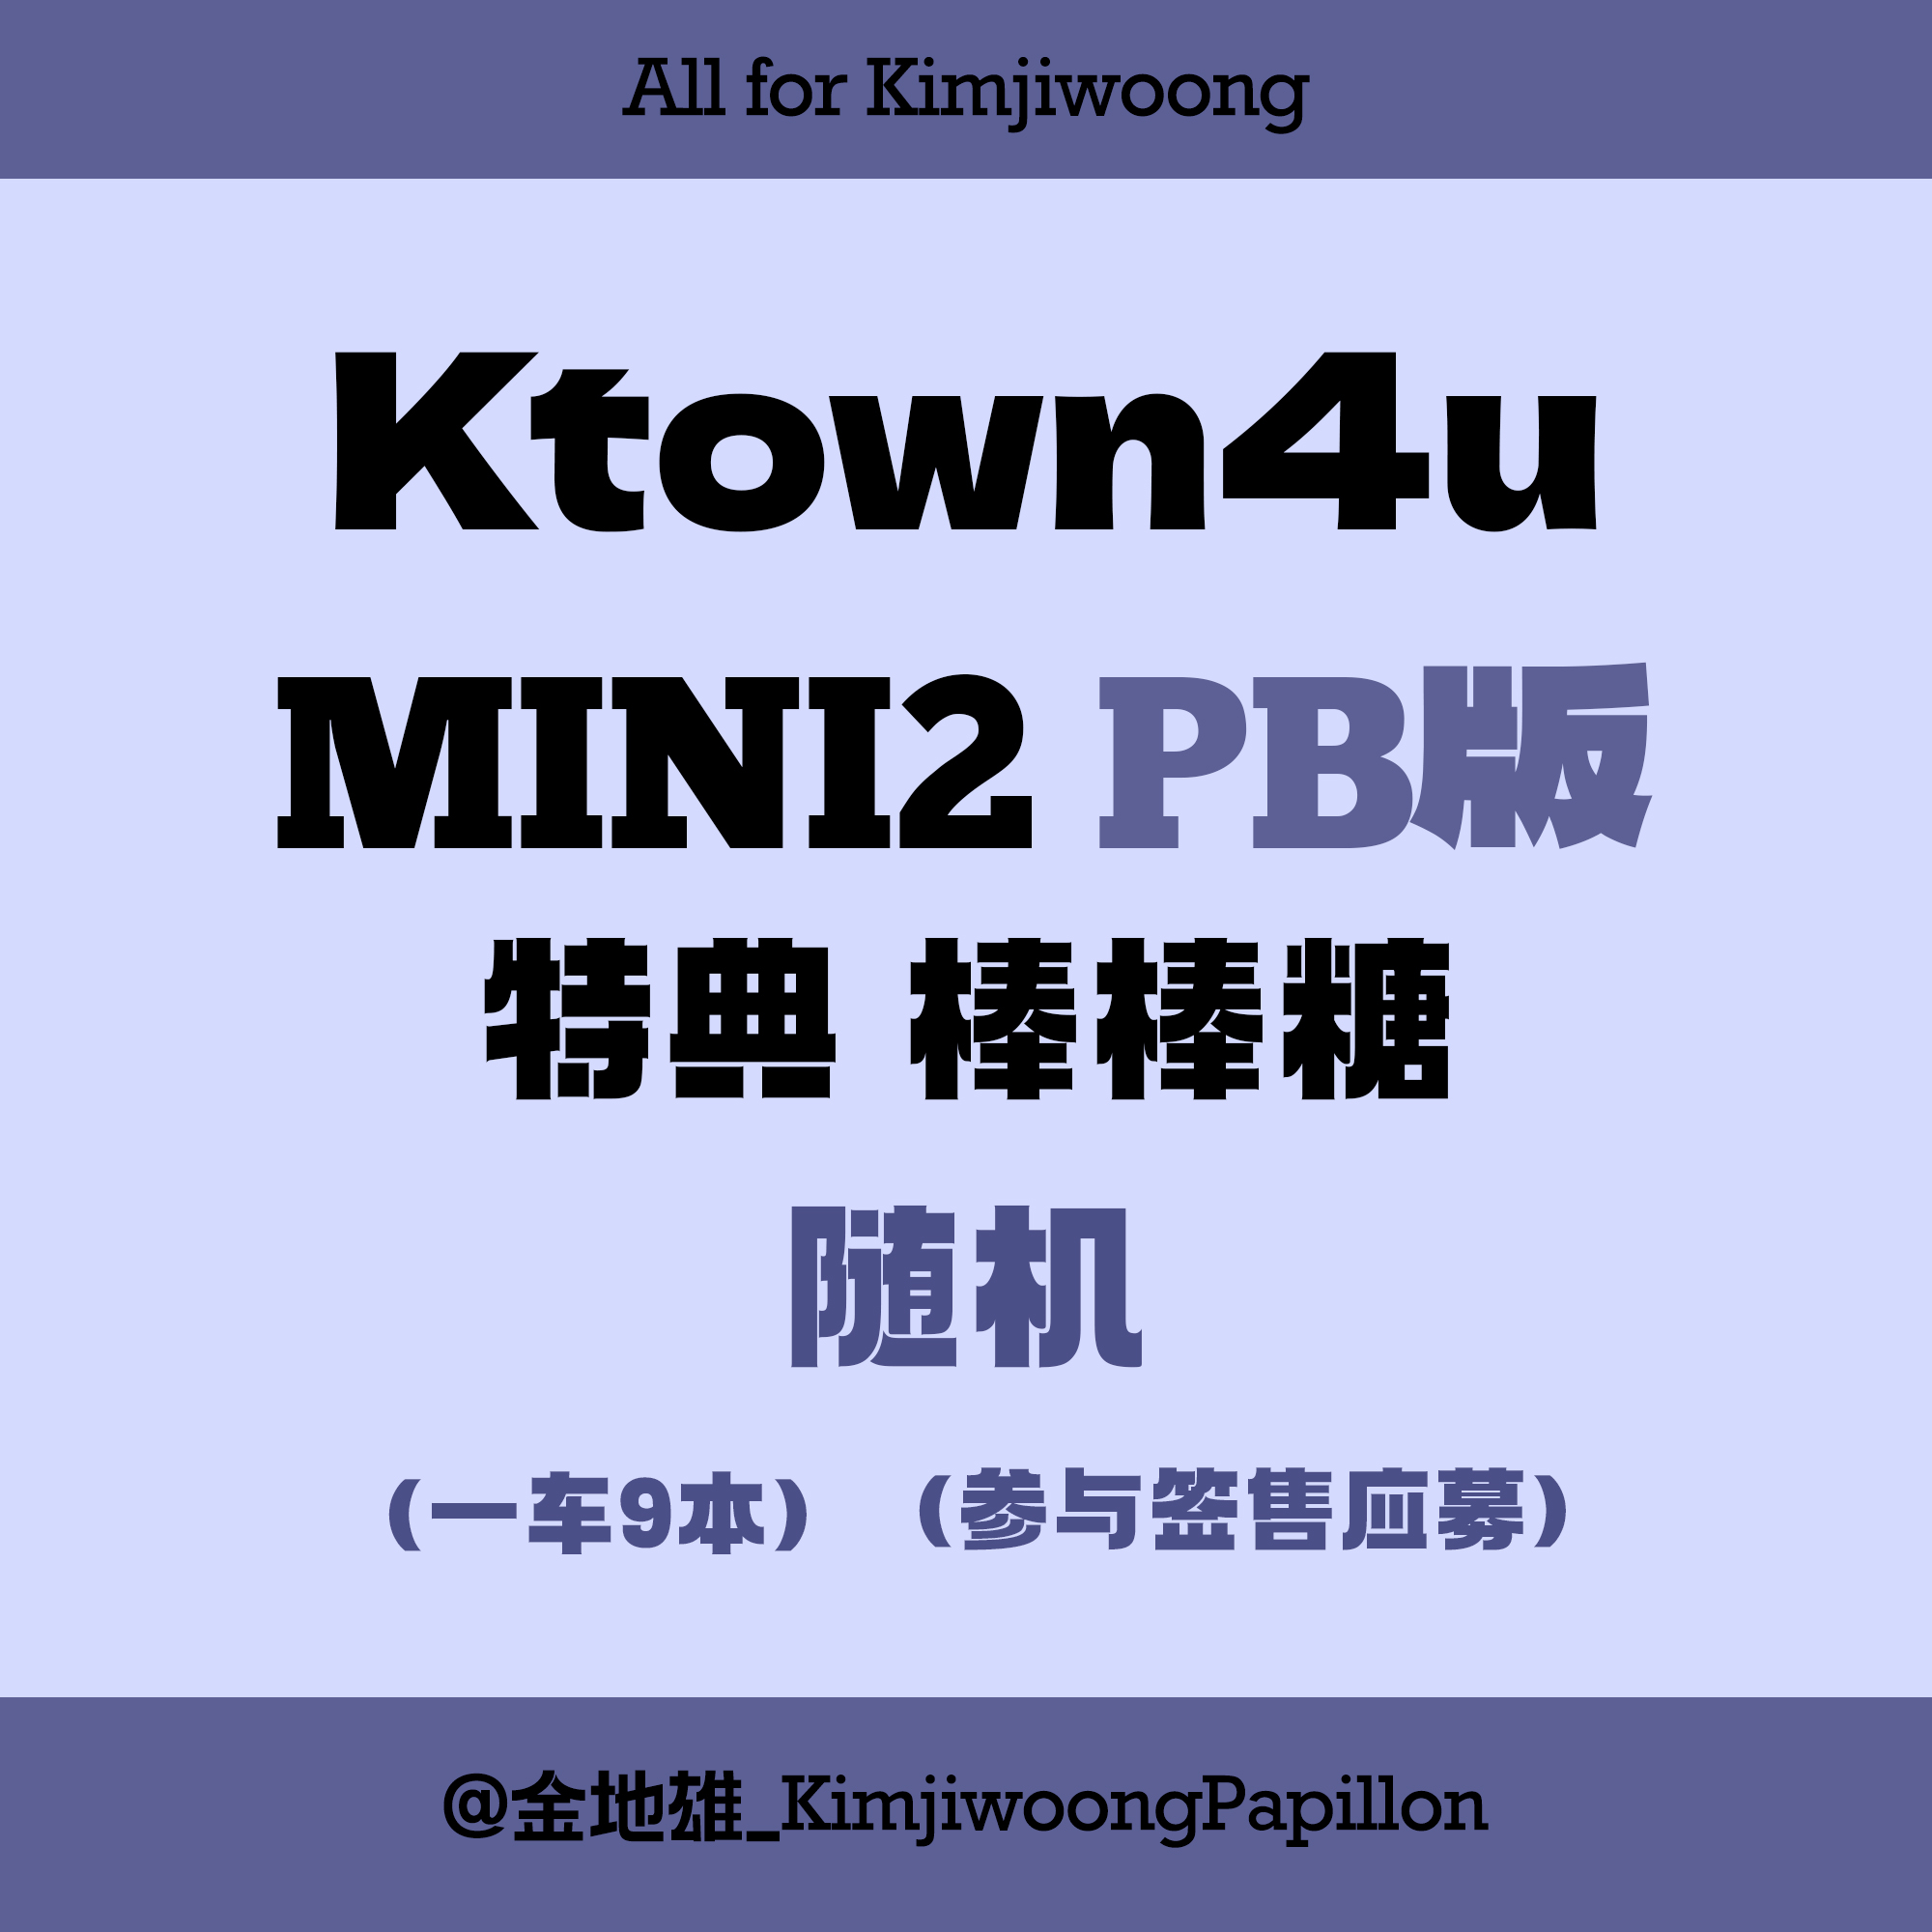 [全款 裸专] [4th] [视频签售活动] [KIM JIWOONG] ZEROBASEONE - The 2nd Mini Album [MELTING POINT] (Random Ver.)_金地雄_KimjiwoongPapillon